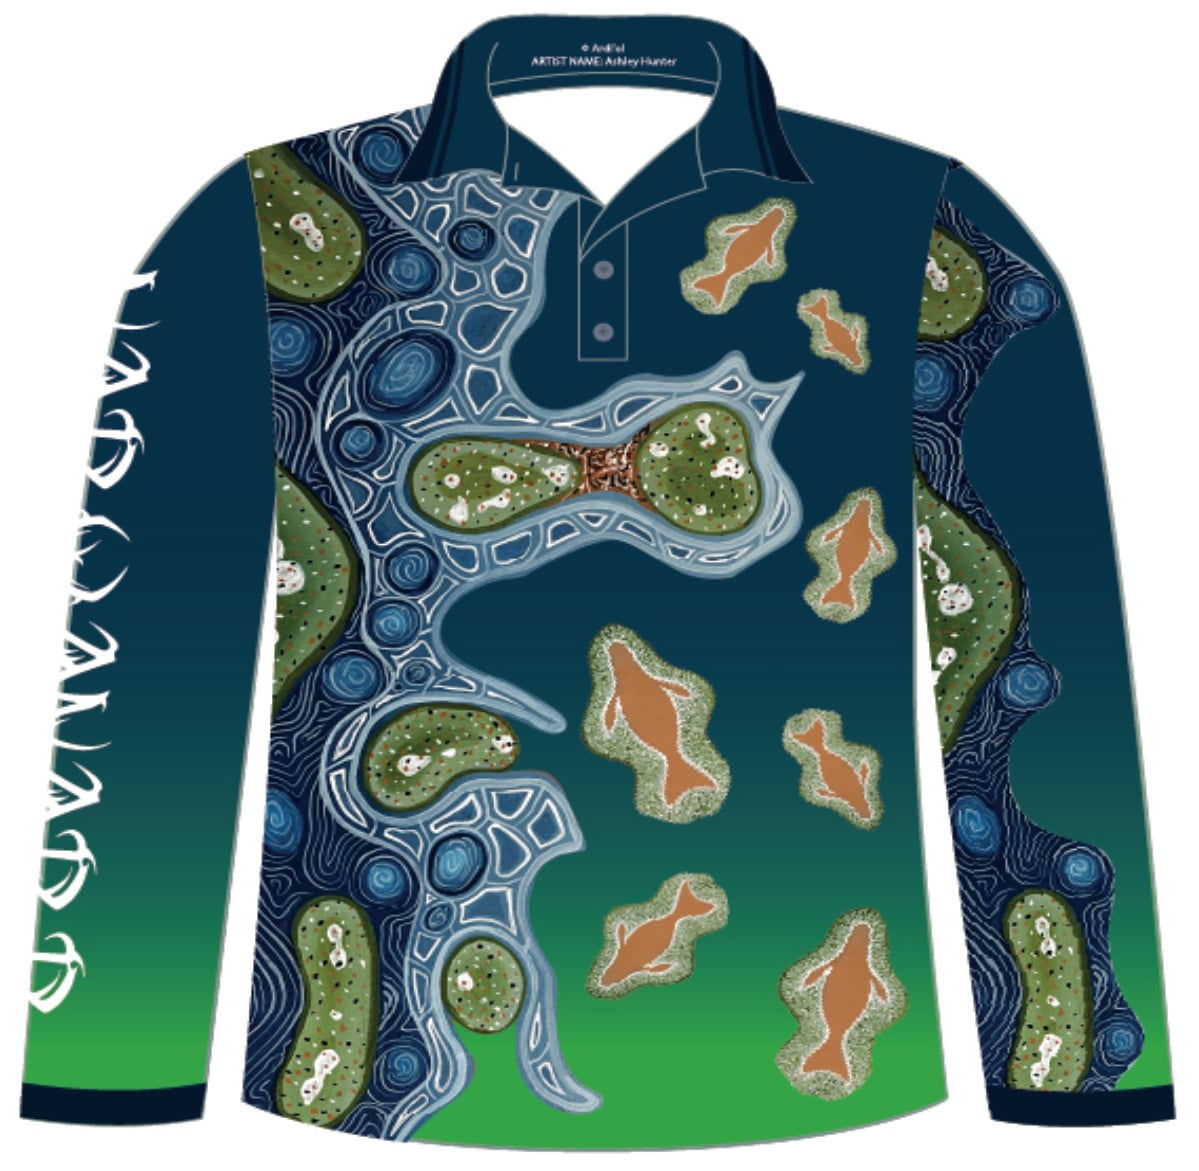 Innan Dinarr - Fishing Shirt (Front)